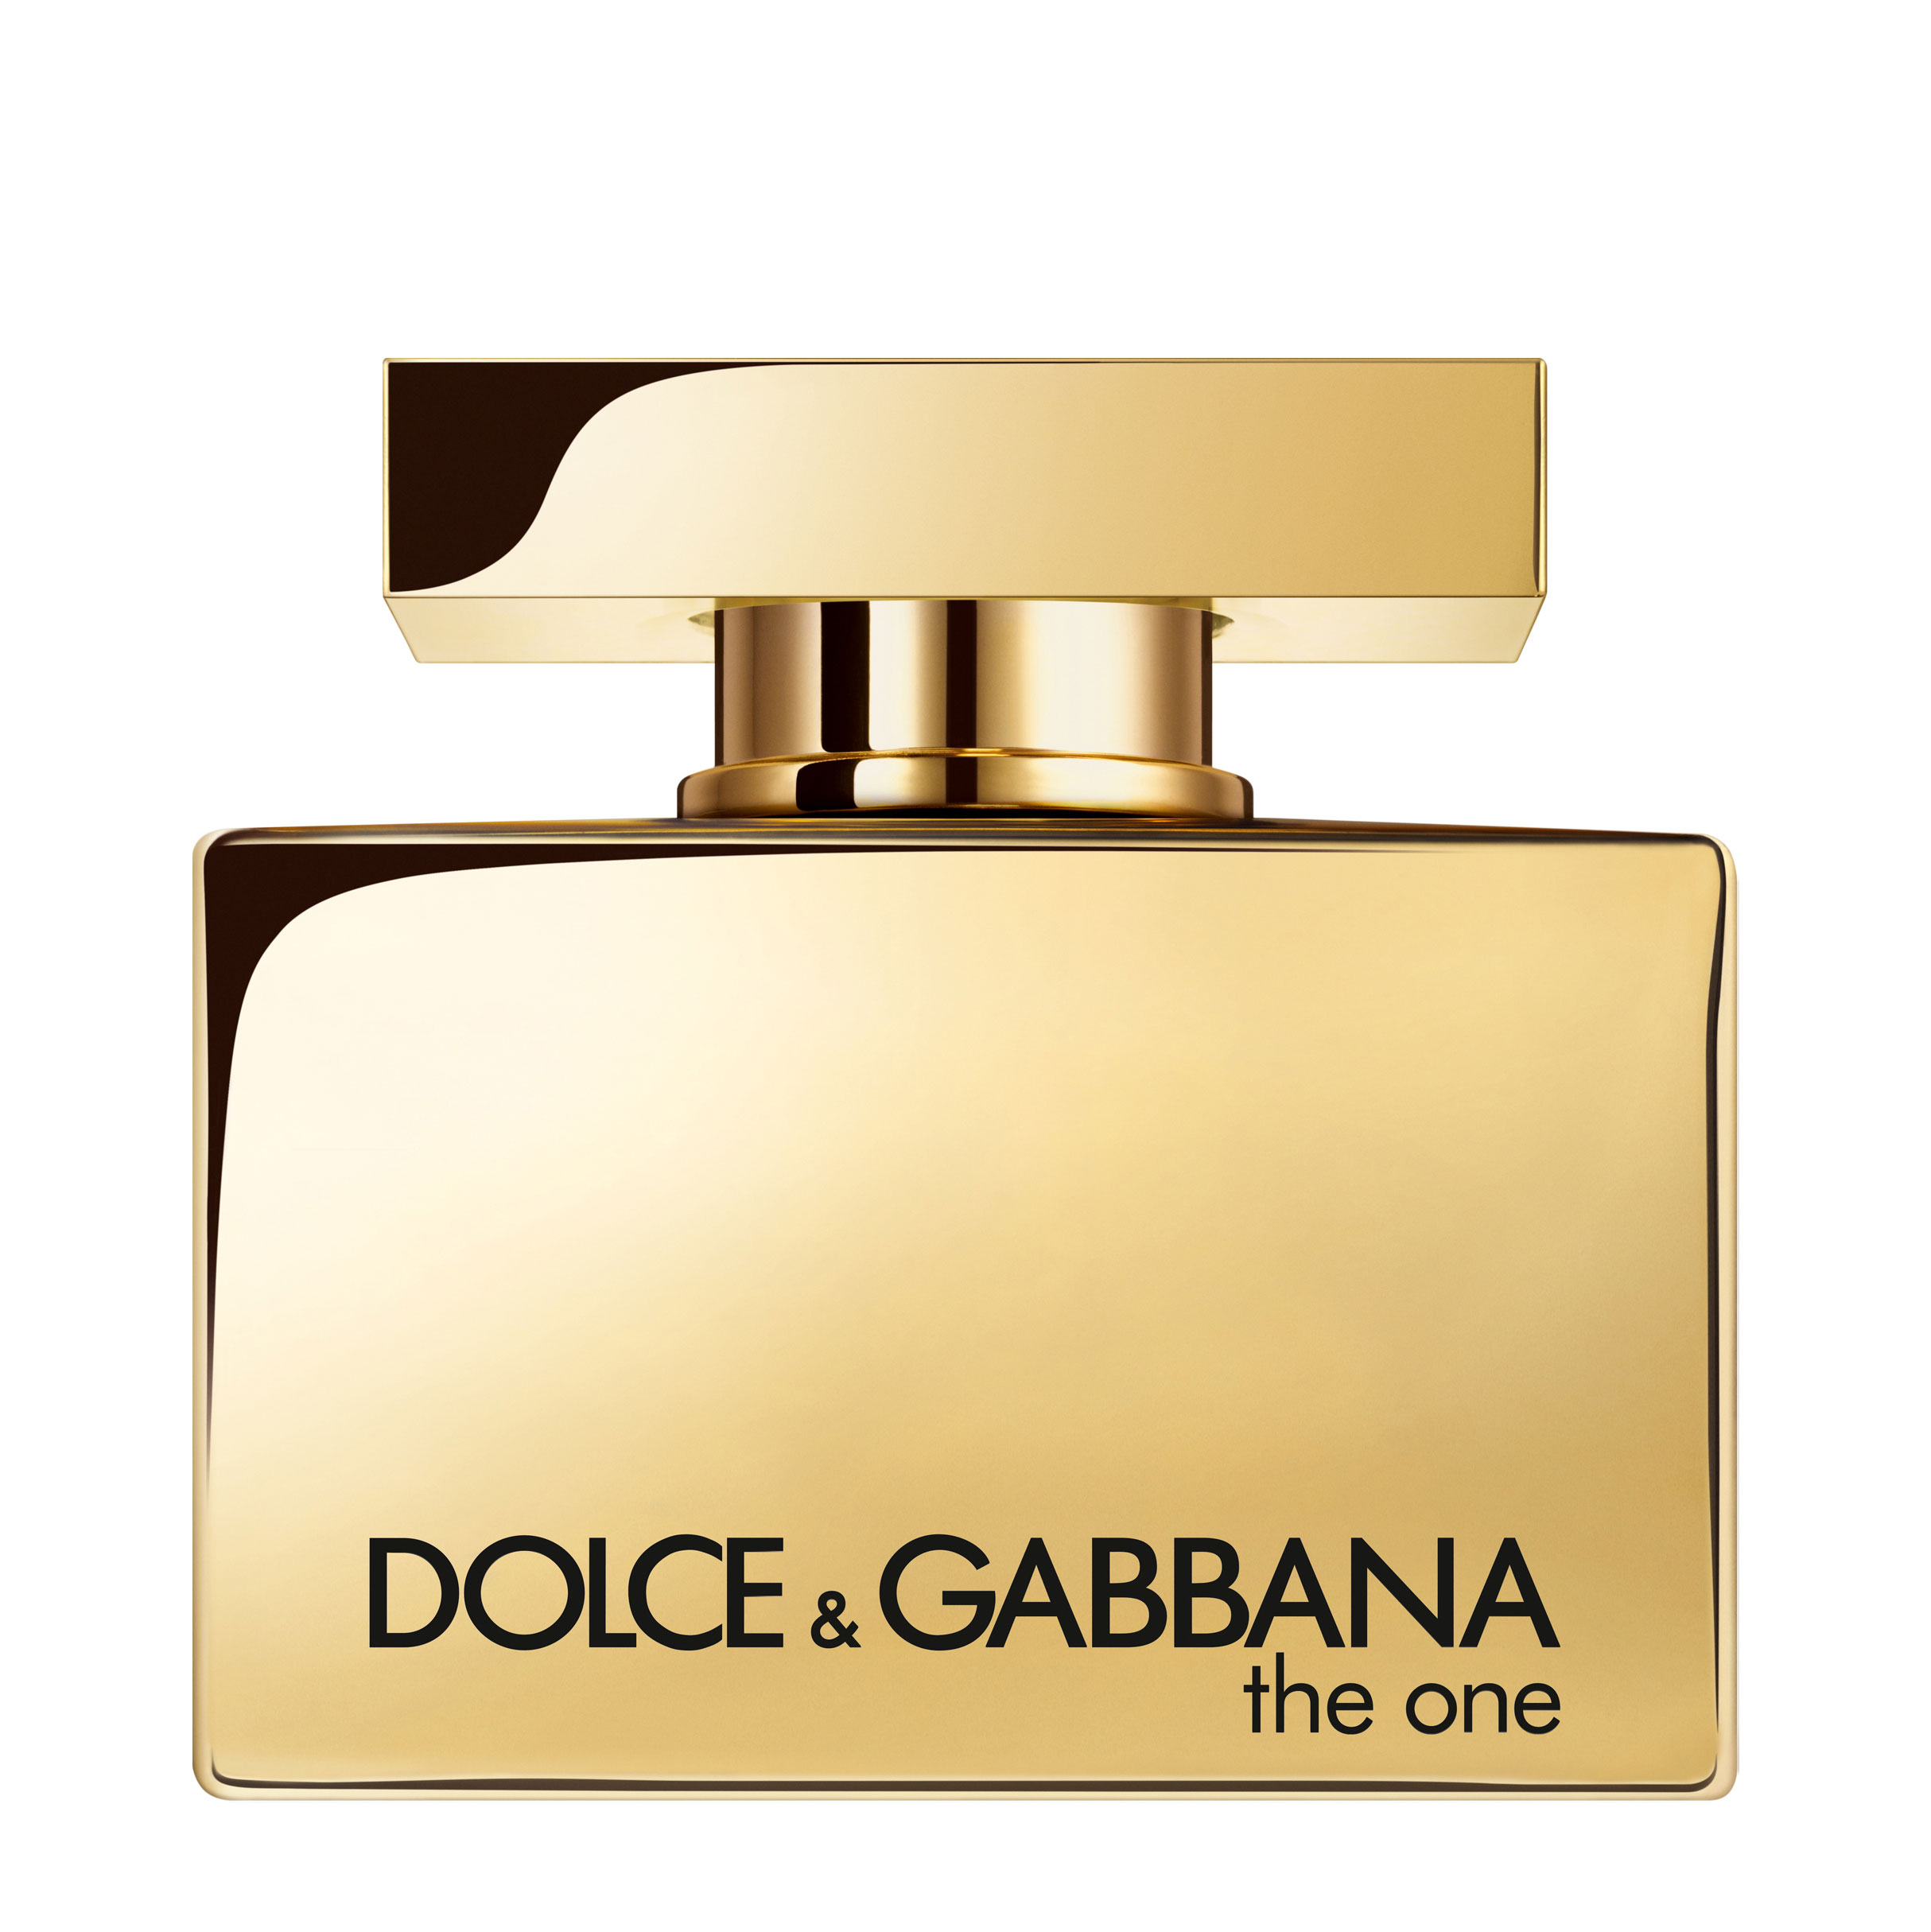 Дольче габбана де. Dolce & Gabbana the one women EDP, 75 ml. Dolce Gabbana the one Gold intense 30 ml. Dolce Gabbana the one Gold intense. Духи Gold Dolce Gabbana the one.